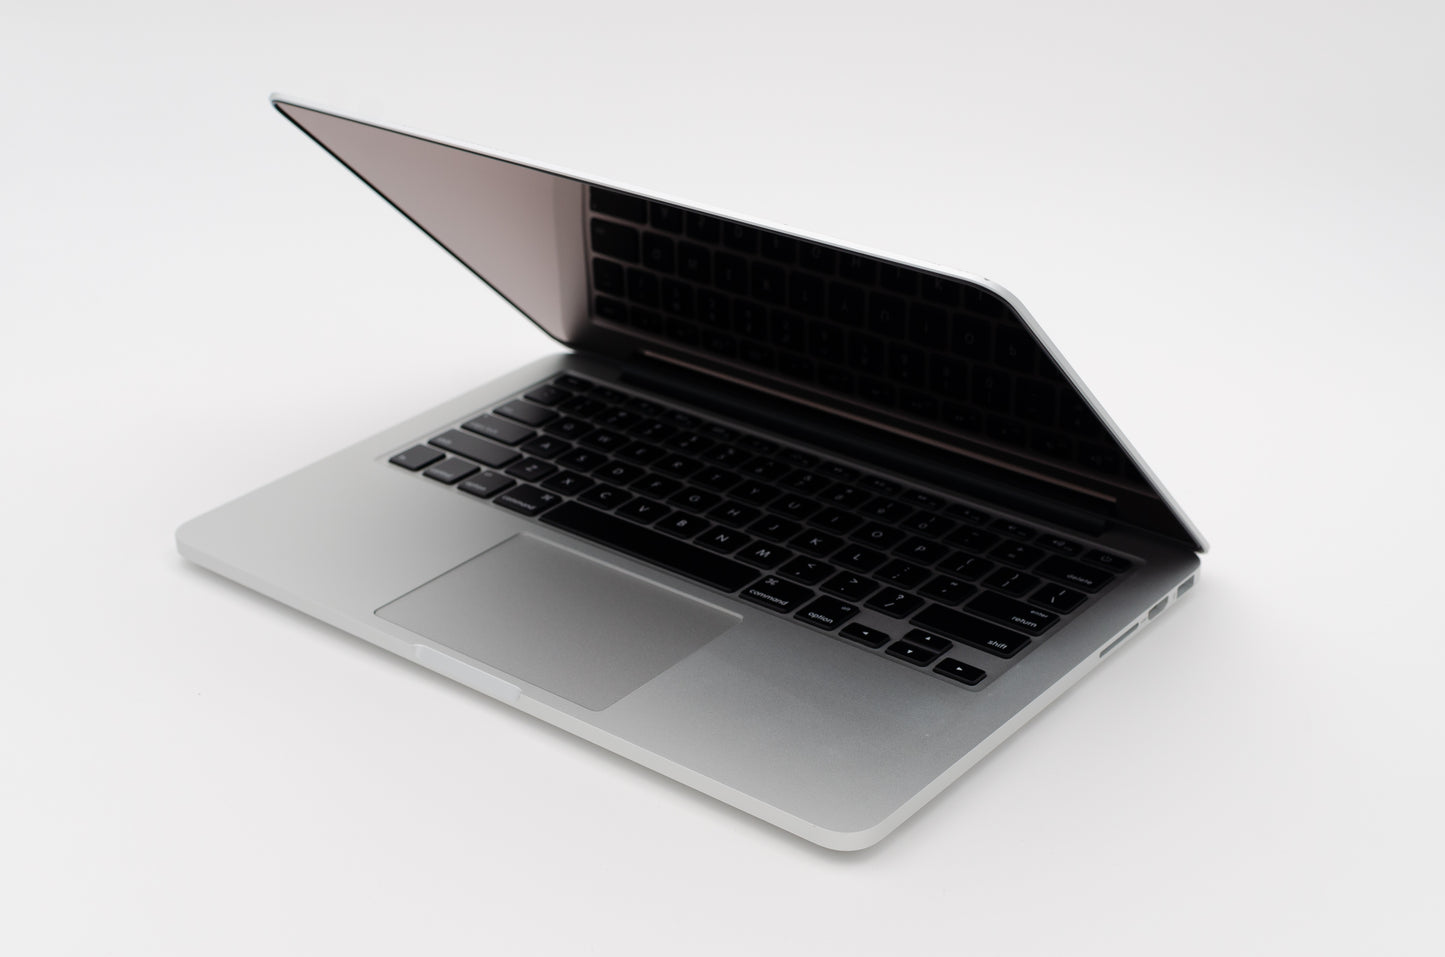 apple-late-2012-13.3-inch-macbook-pro-retina-a1425-aluminum-dci5 - 2.5ghz processor, 8gb ram, hd 4000 - 512mb gpu-md212ll/a-5